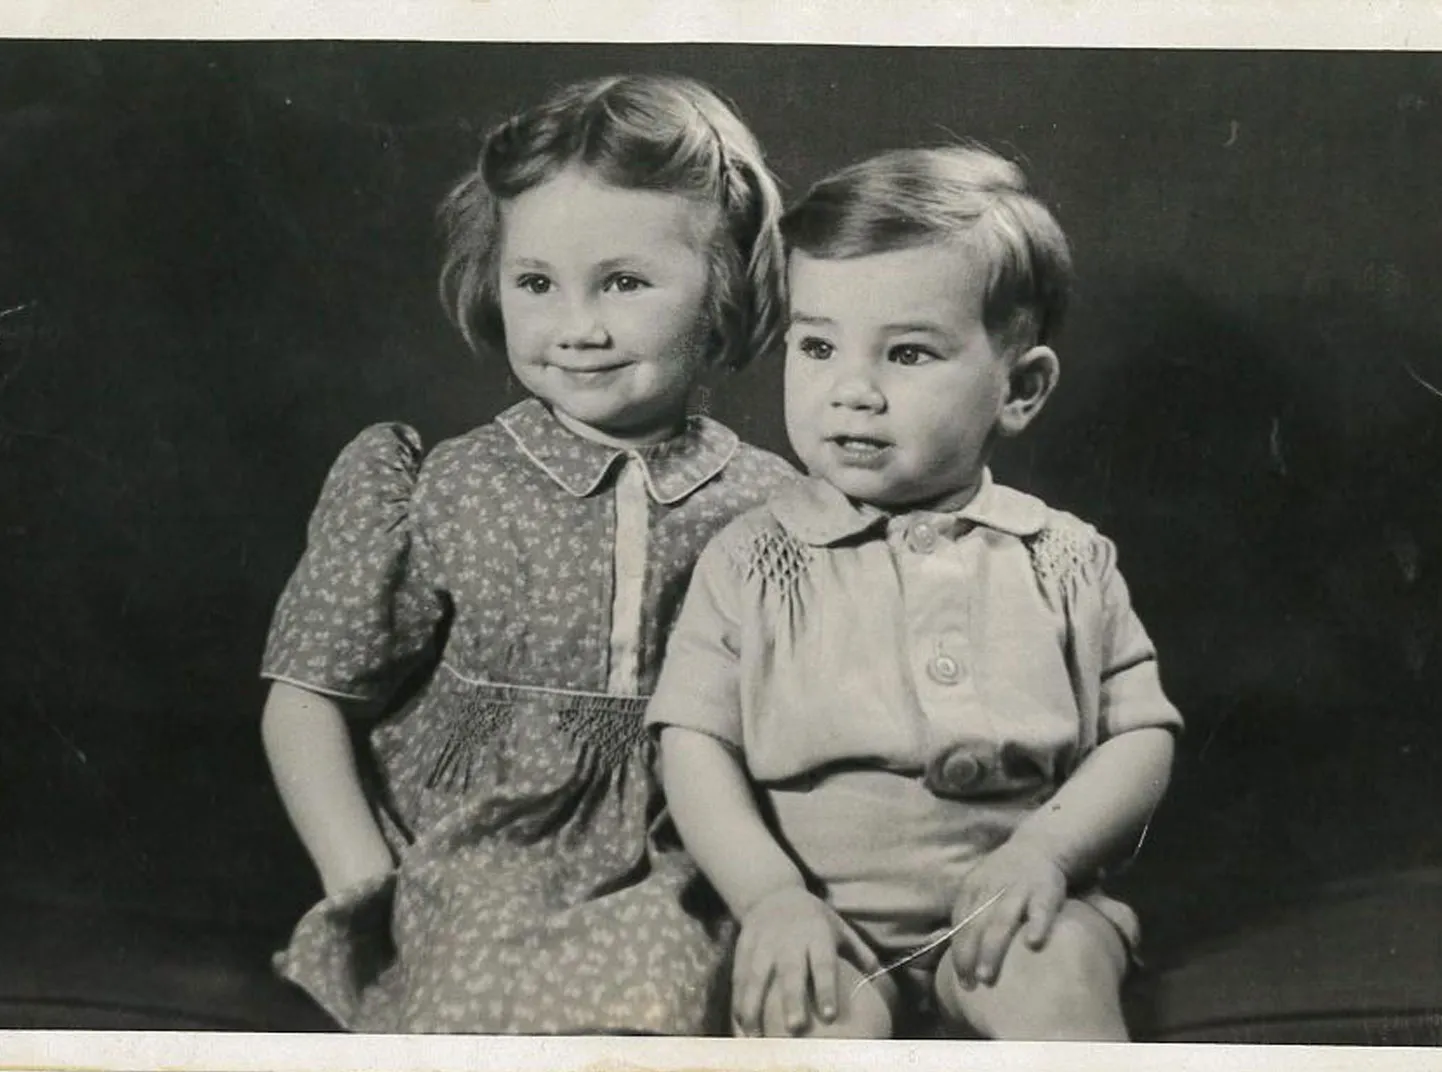 Une image en noir et blanc d'un jeune garçon et fille.